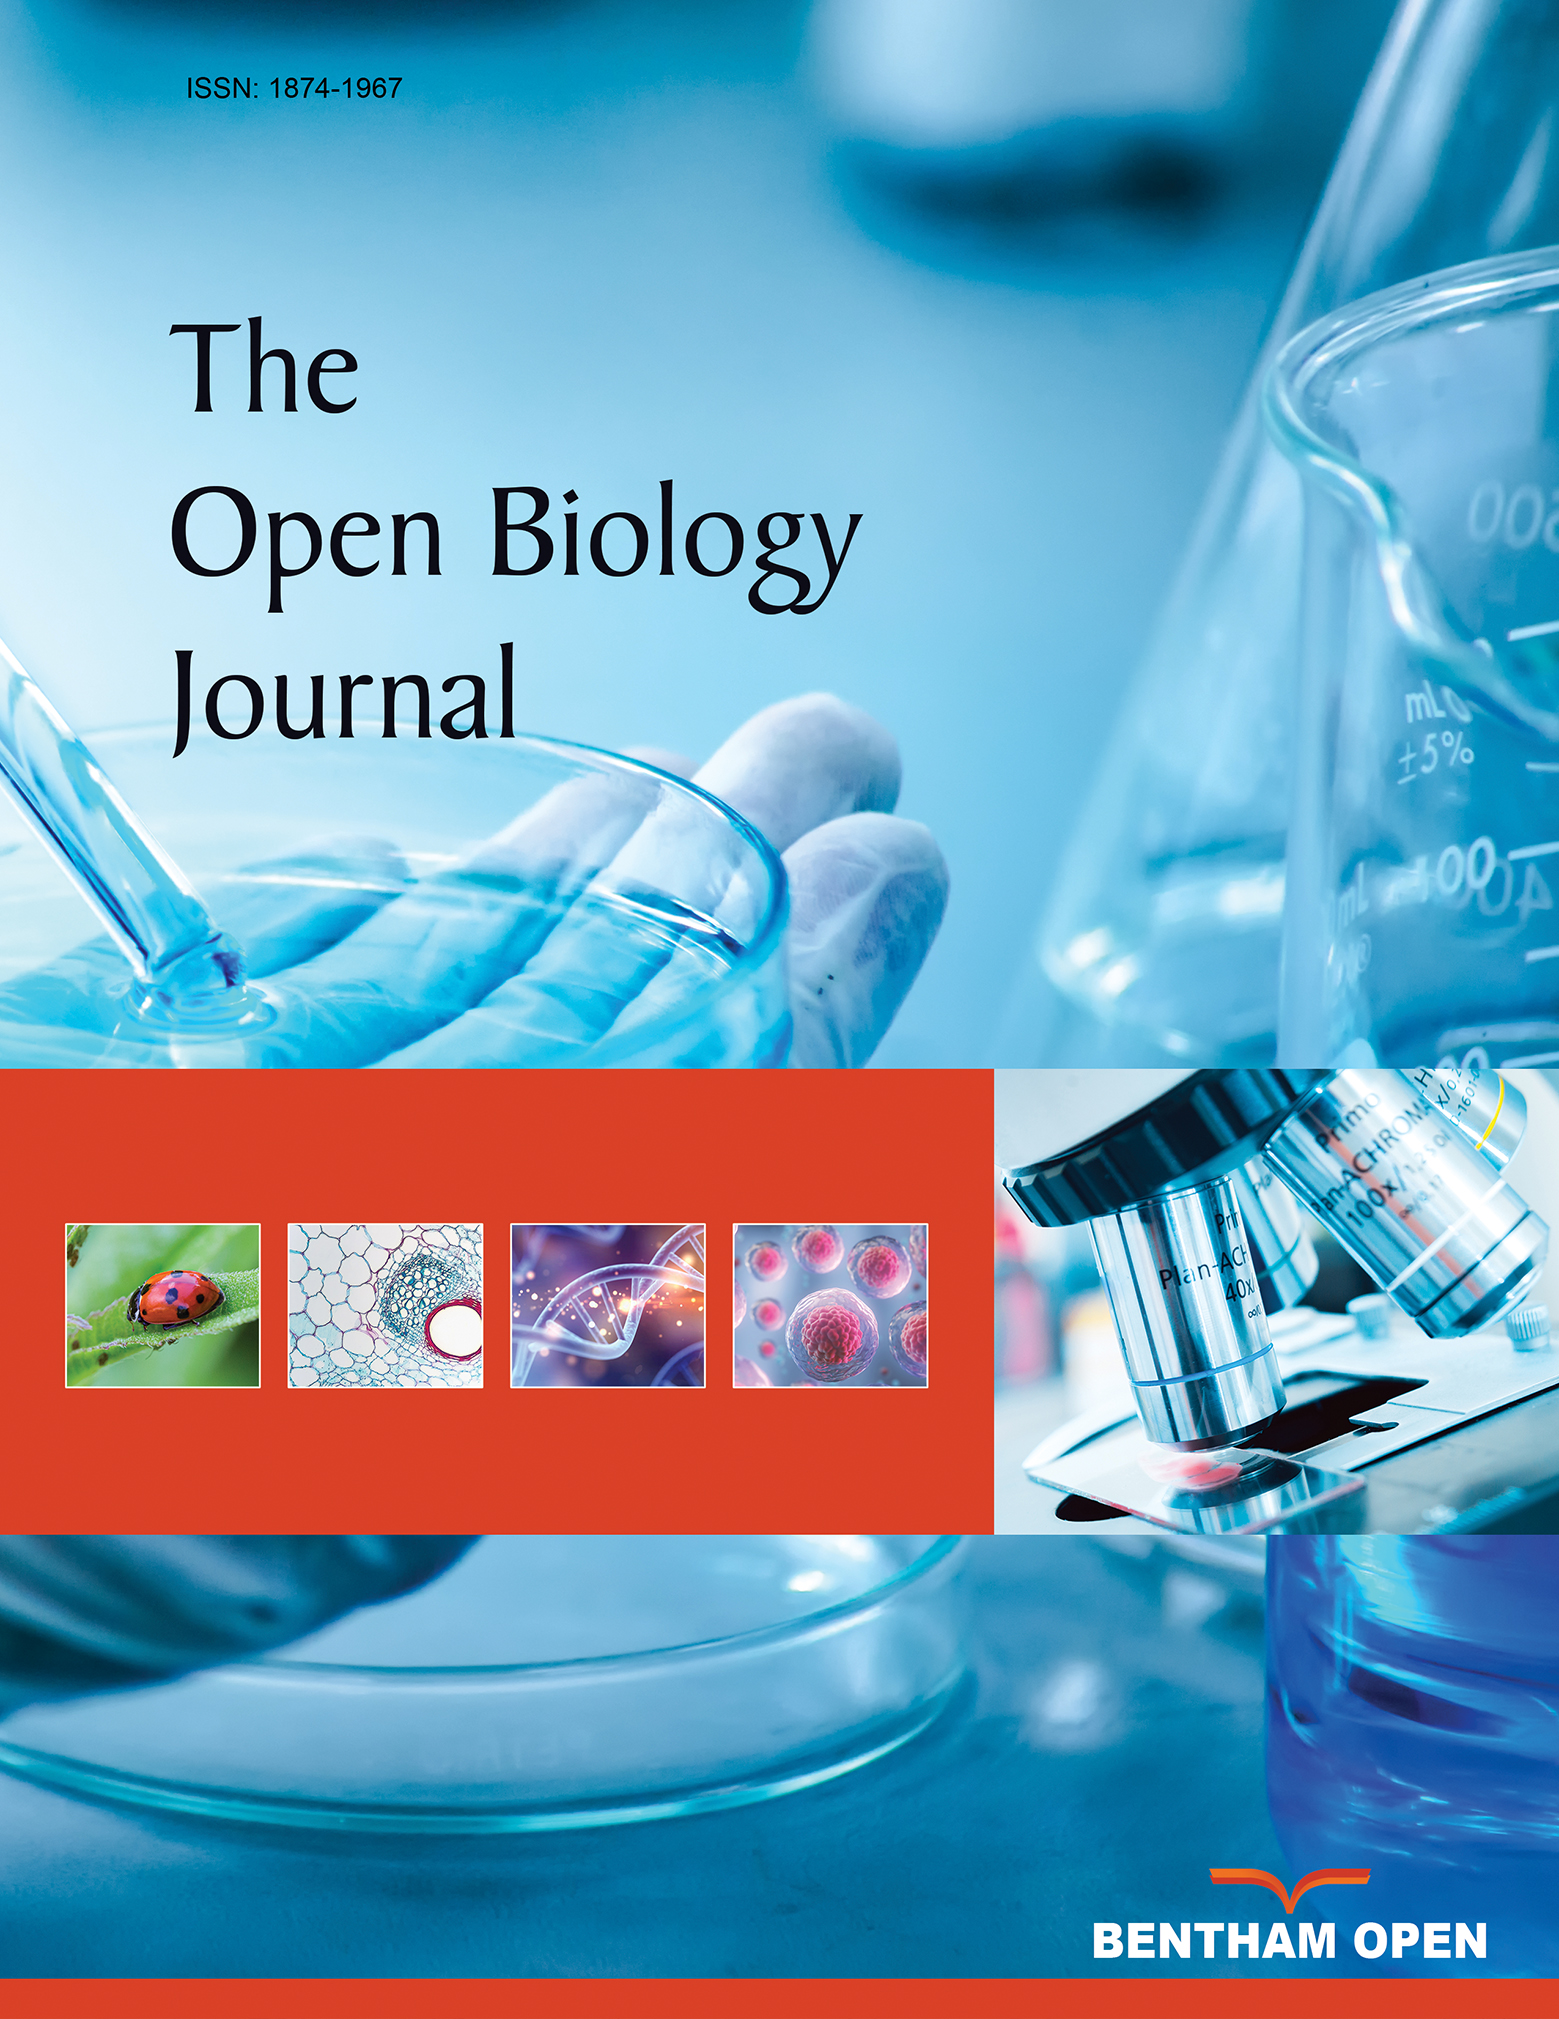 The Open Biology Journal